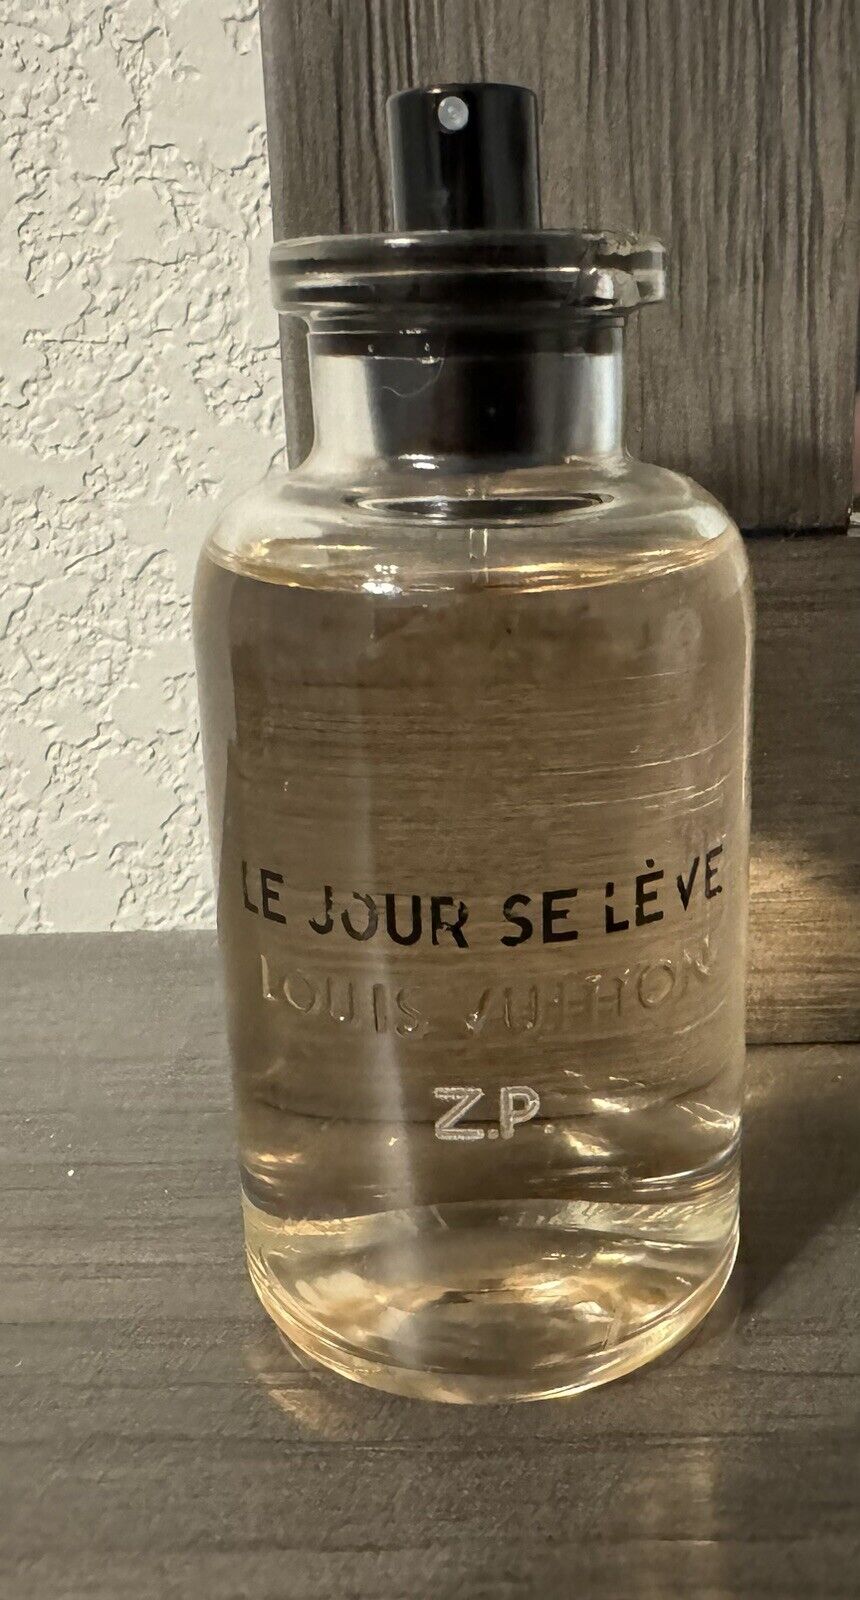 Louis Vuitton perfume Le Jour Se Leve. Tester, No Cap. Initials “Z.P.” Engraved.